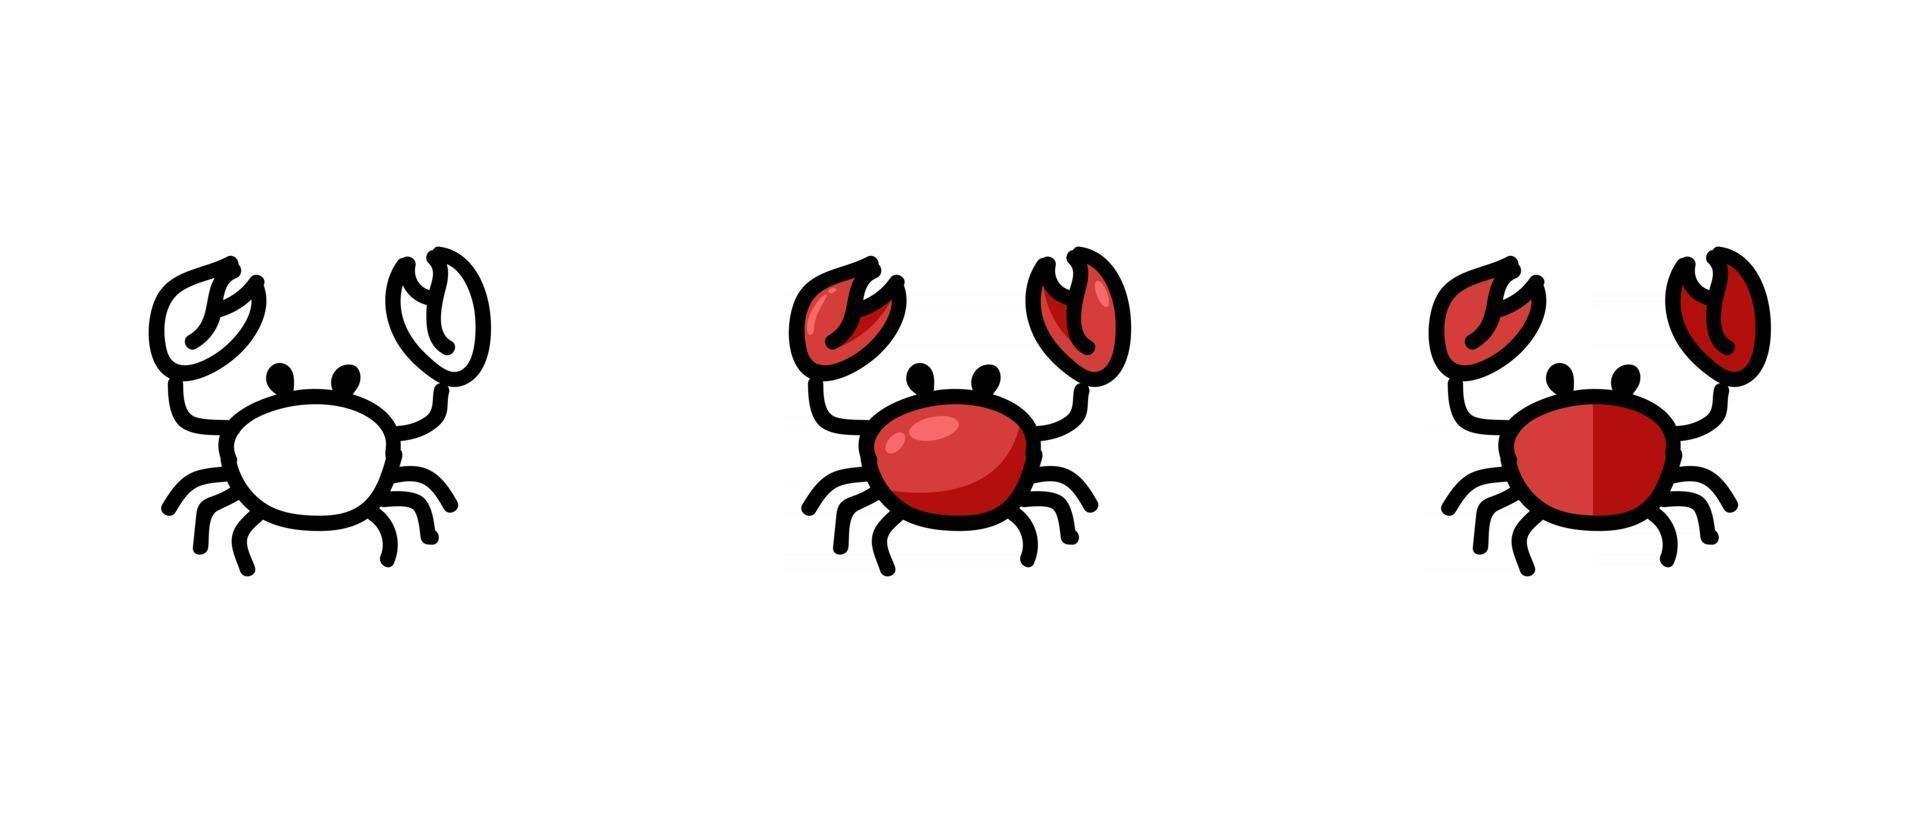 contours et symboles de crabe colorés vecteur